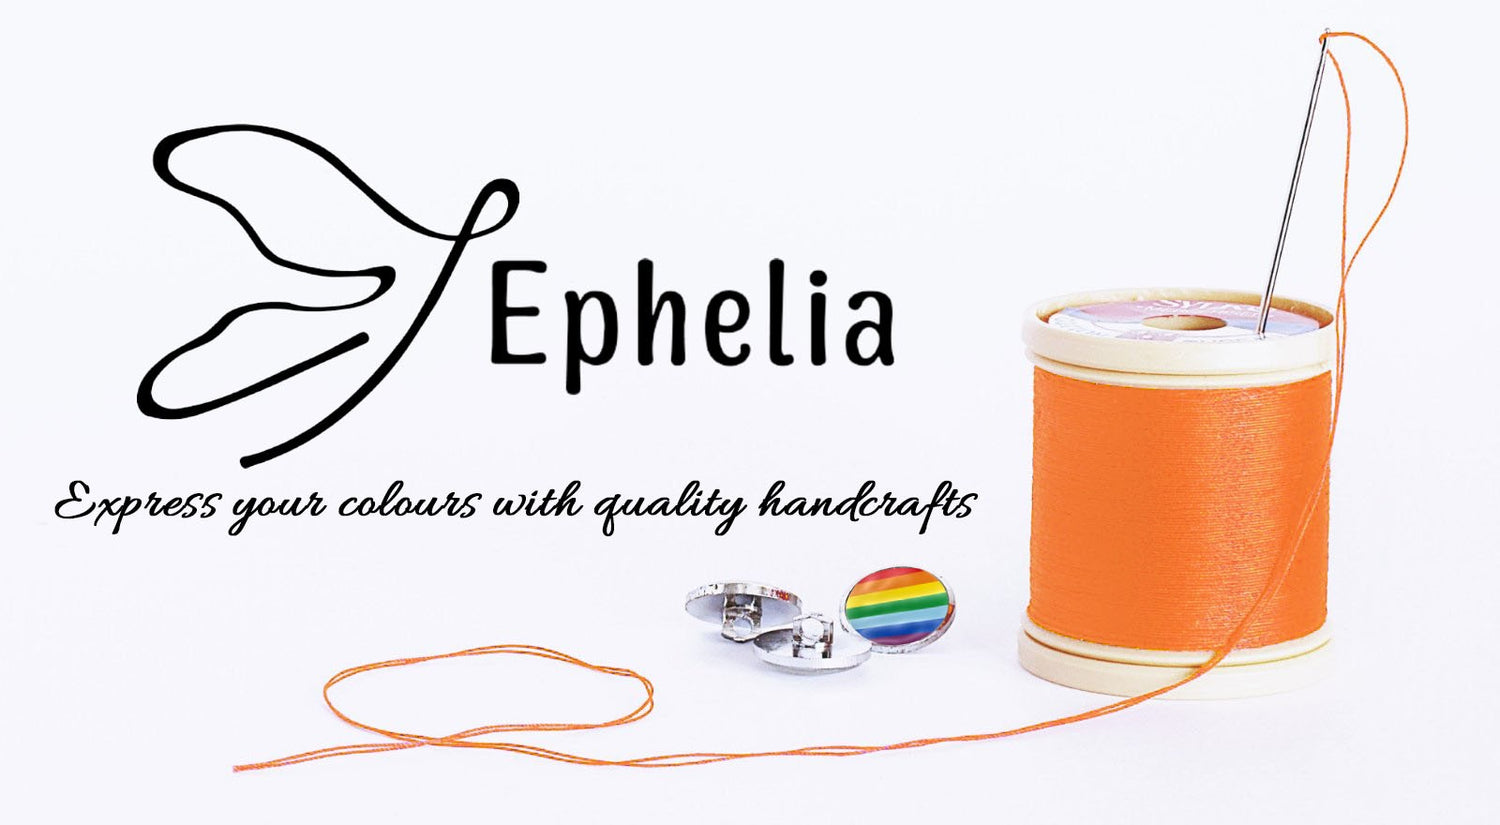 Το logo του brand Εphelia σε λευκό φόντο και απο κάτω η φράση "Express your colours with quality handcrafts" με καλλιτεχνικά γράμματα. Δίπλα μία λευκή κουβαρίστρα με πορτοκαλί κλωστή , στη κορυφή της μια βελόνα με περασμένη πορτοκαλί κλωστή και 3 κουμπιά. Τα δύο ασημί και το ένα με χρώμα rainbow.